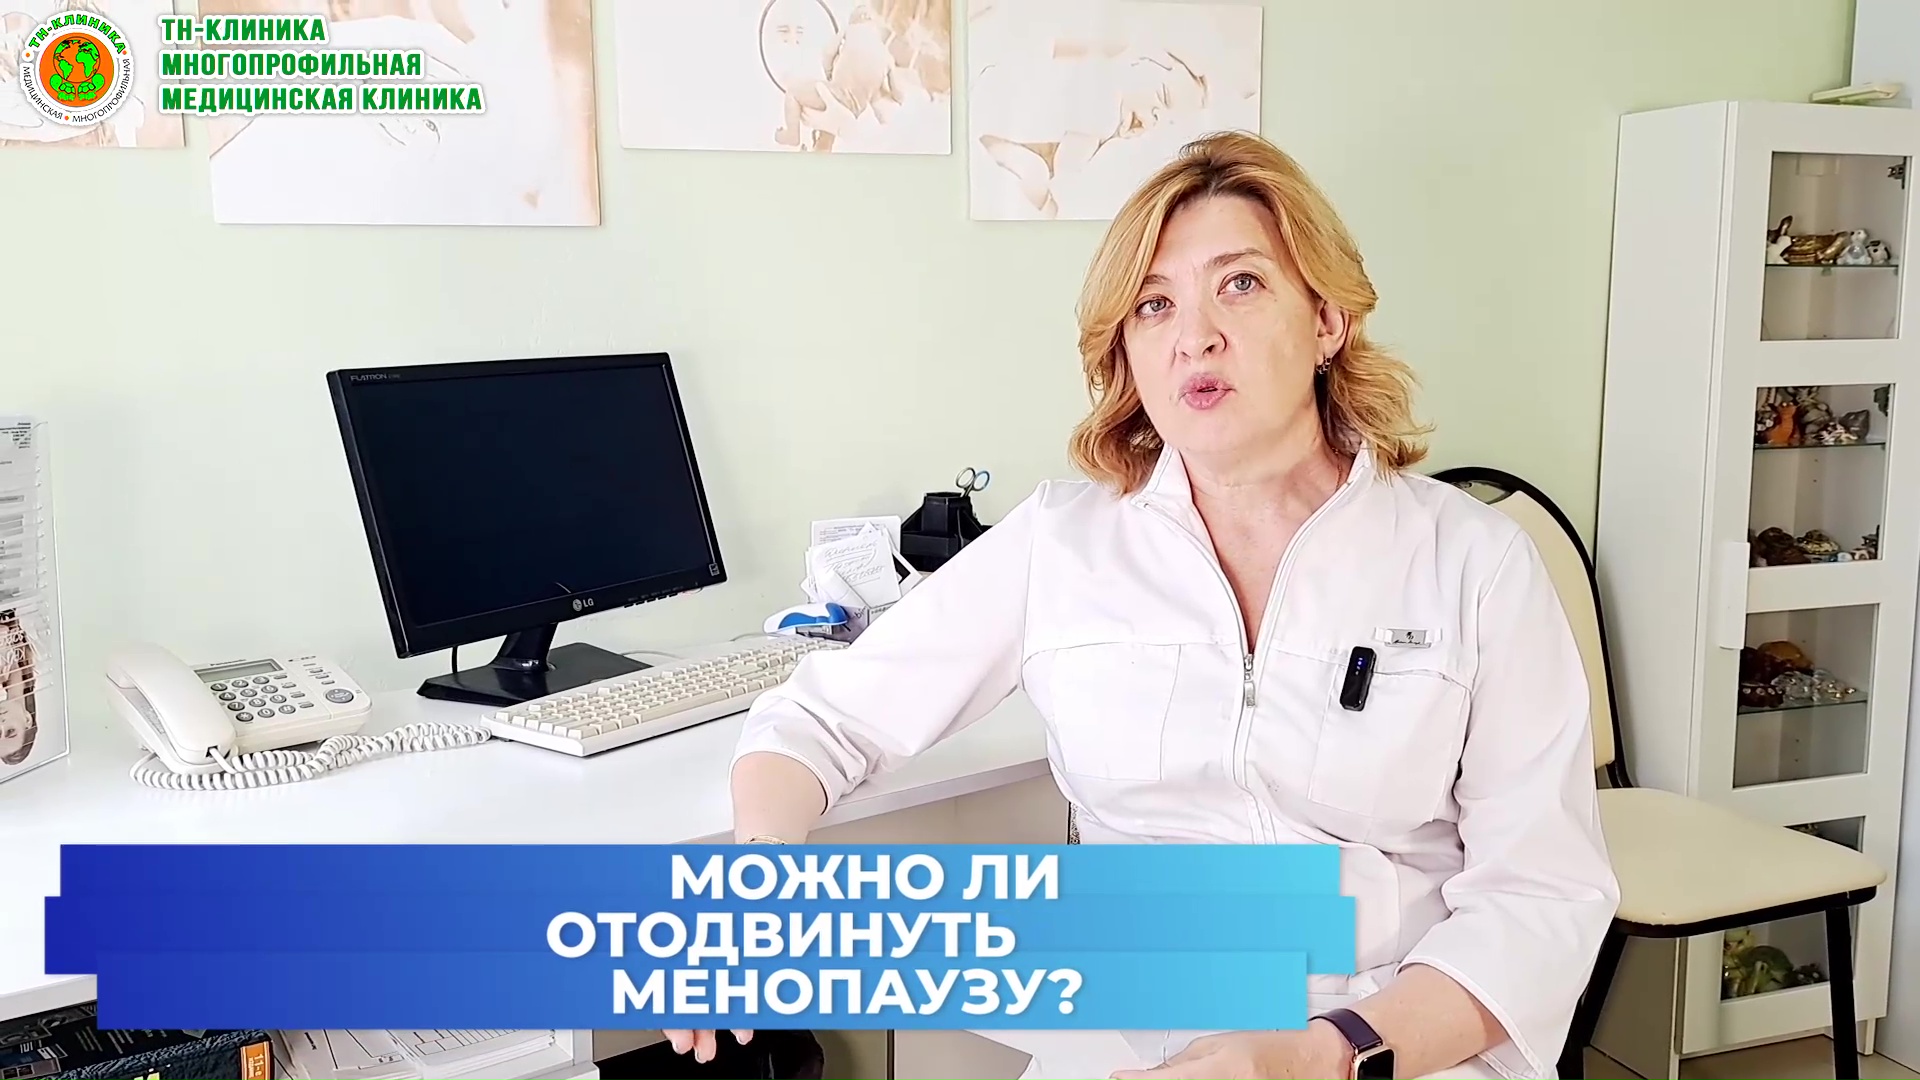 Новая рубрика на Youtube-канале: ВОПРОС-ОТВЕТ. Вопрос 1: Можно ли отсрочить менопаузу?